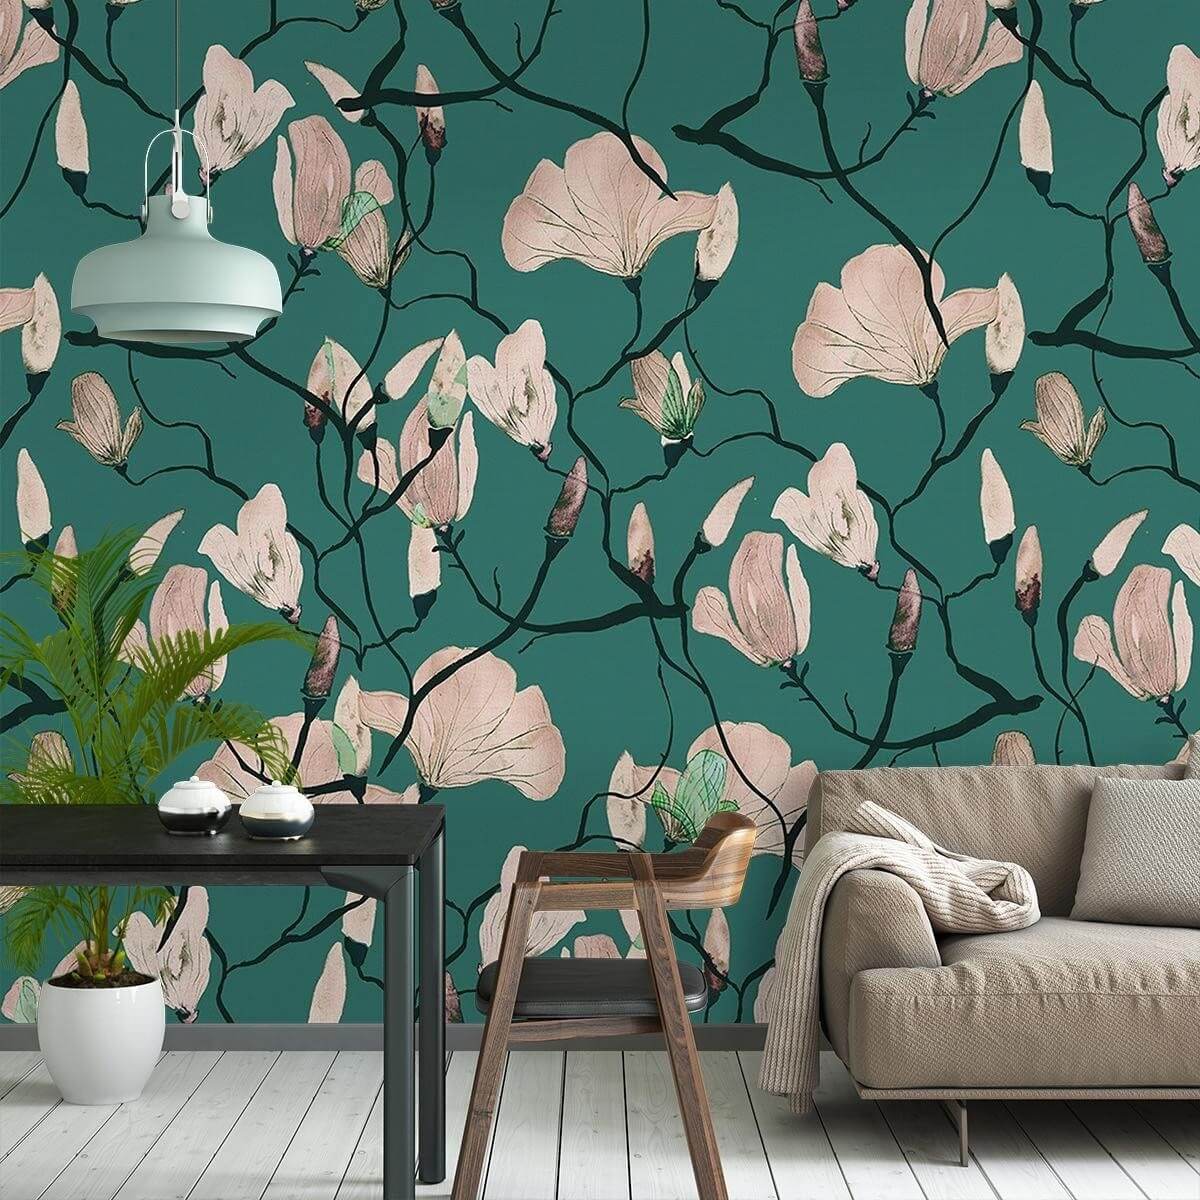 Hotaru Fabric, Wallpaper and Home Decor